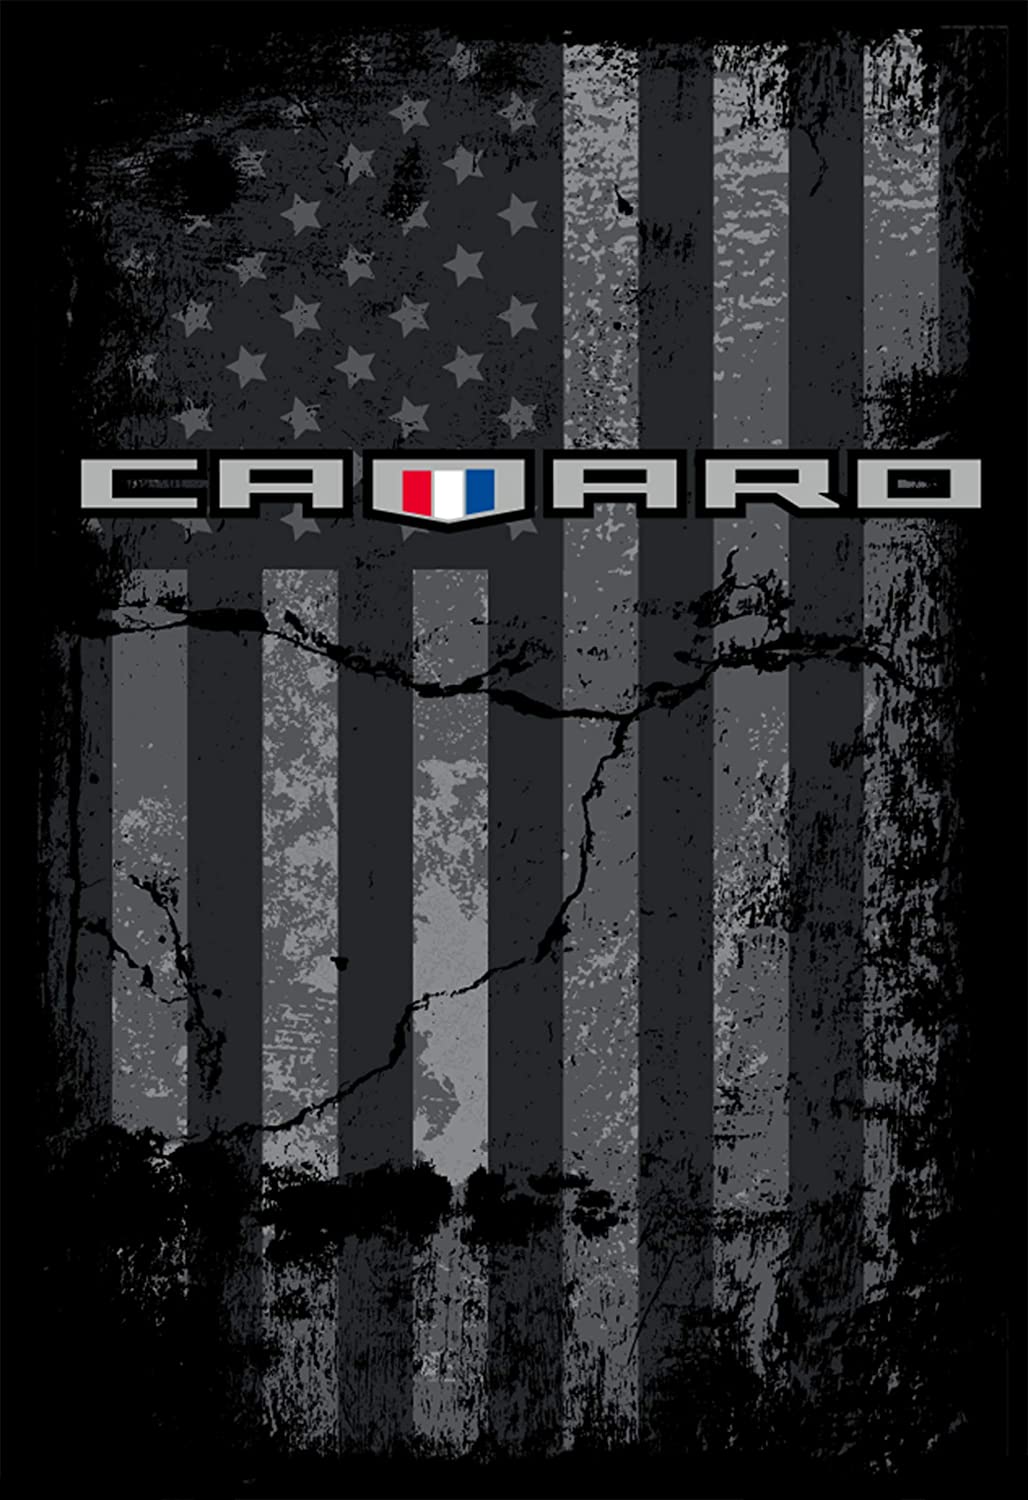 Camaro Logo Wallpapers